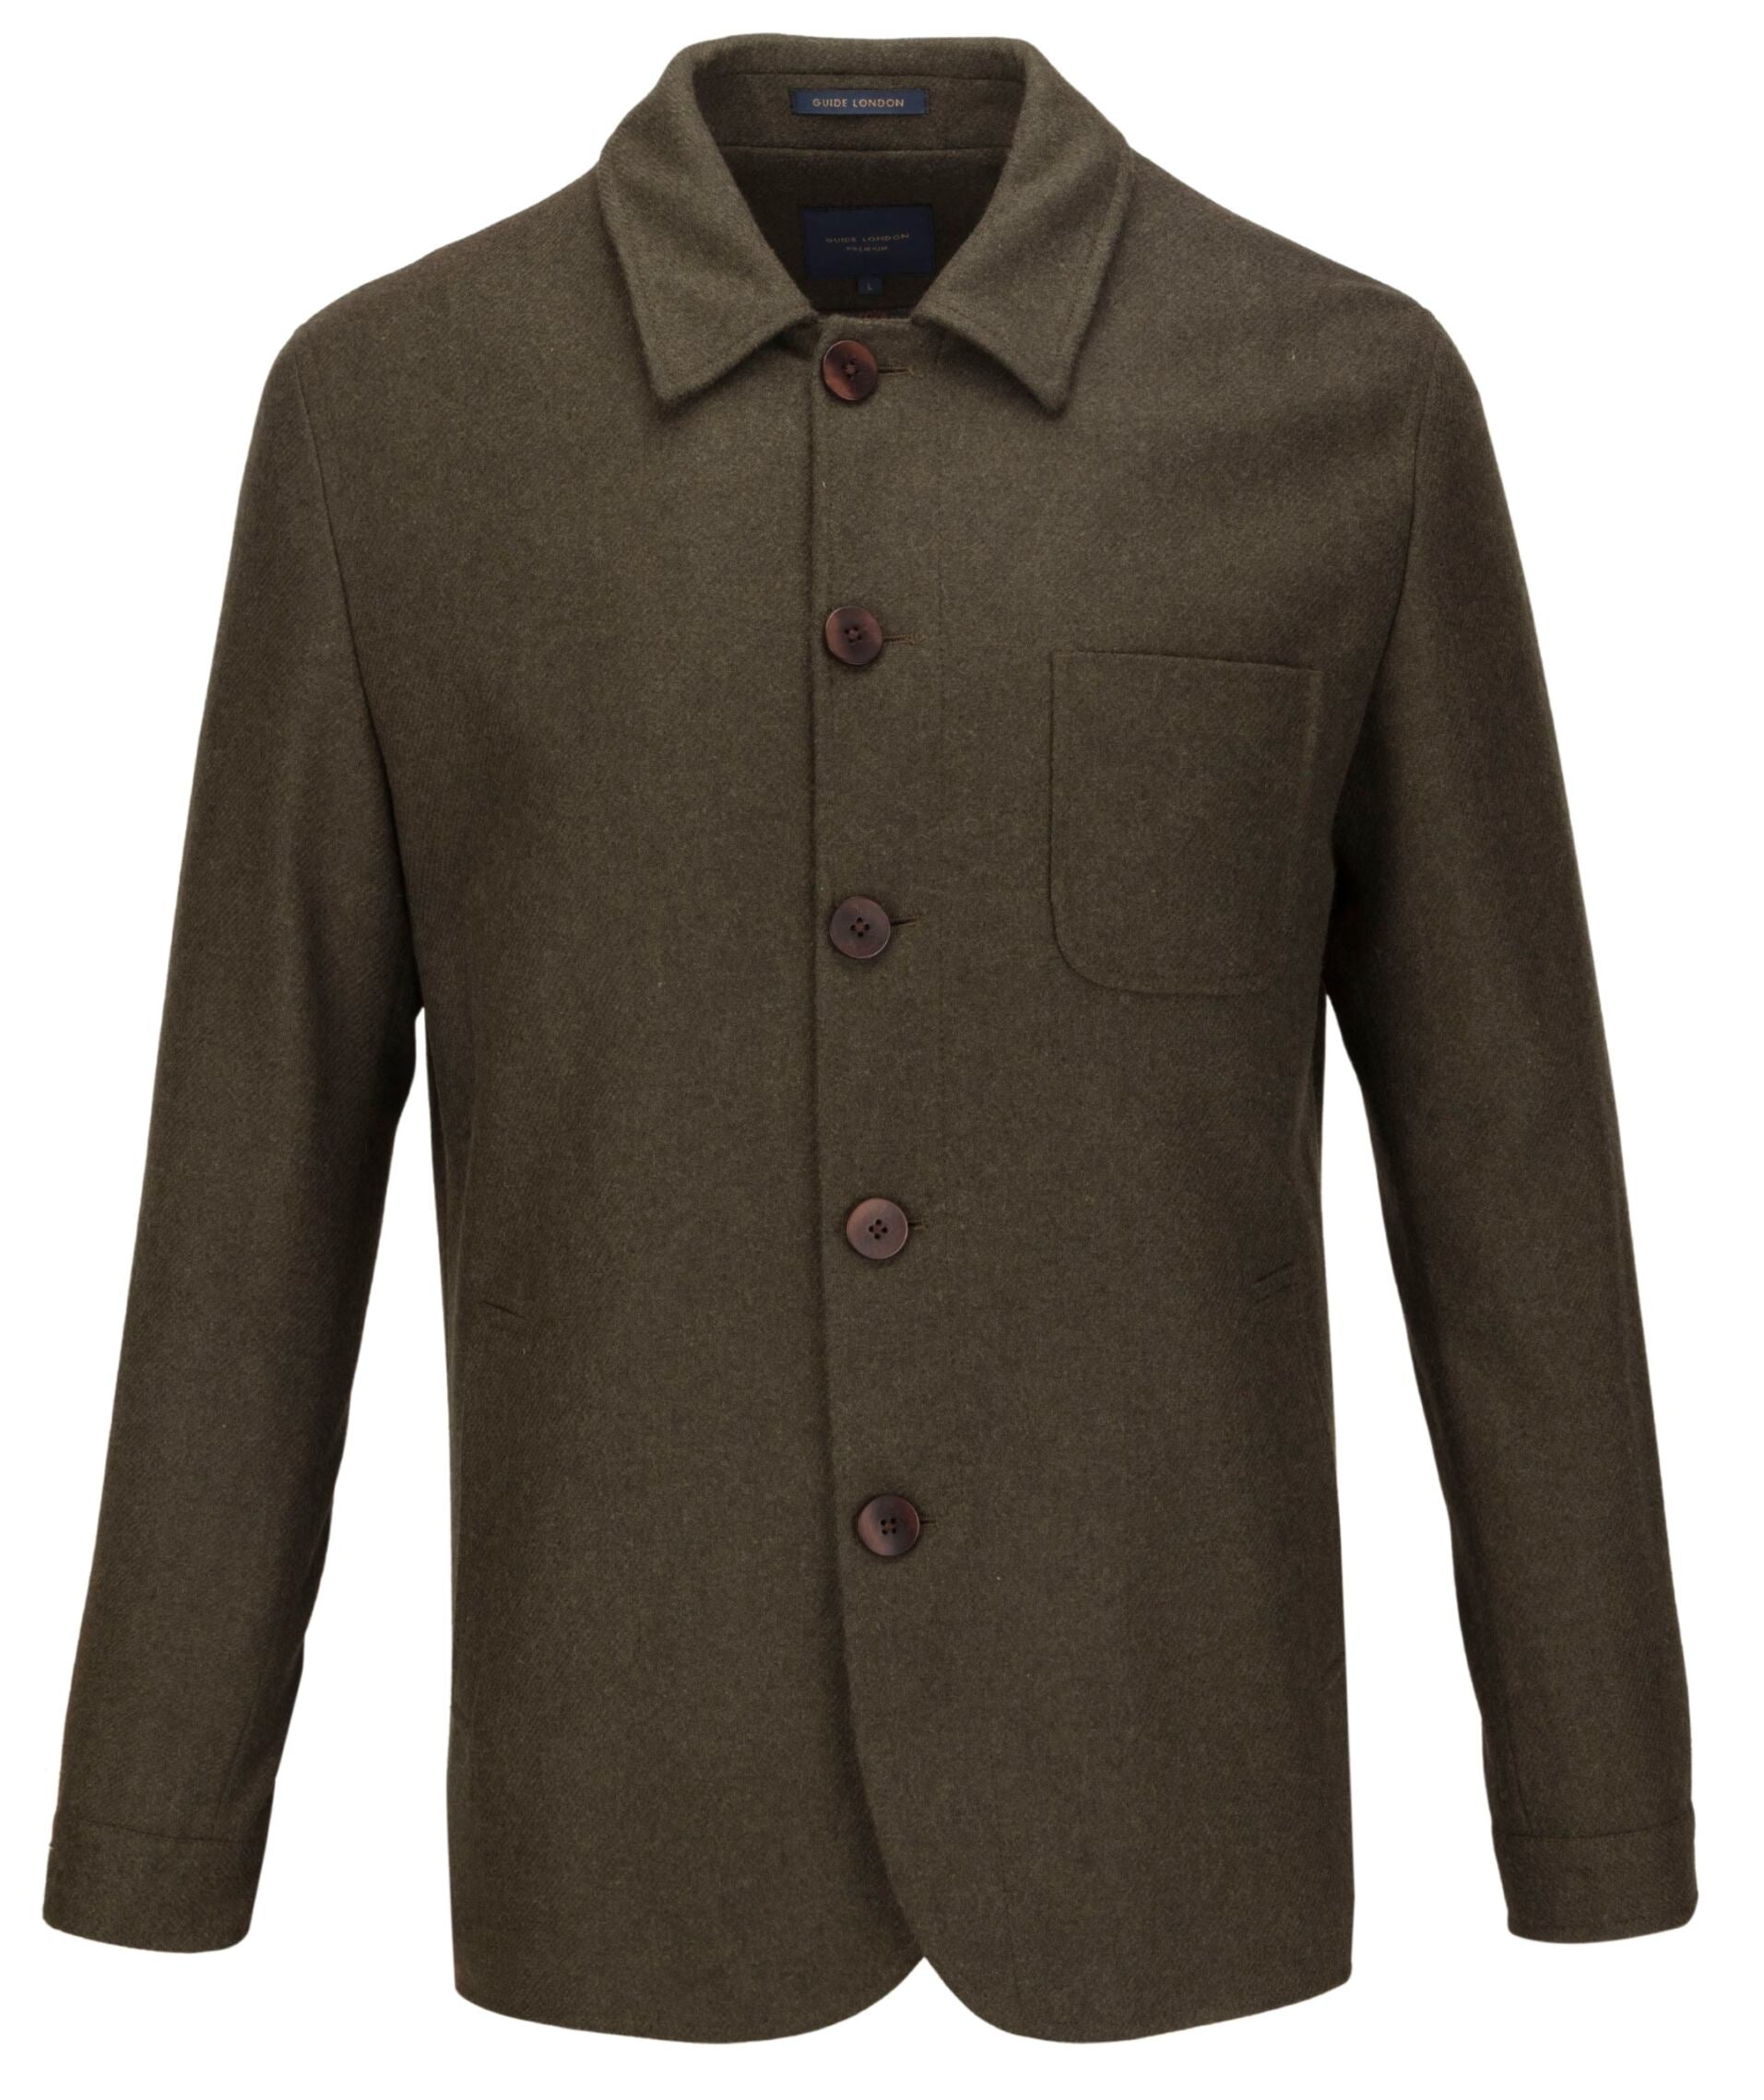 Guide London Italian Wool Blend Jacket | Olive